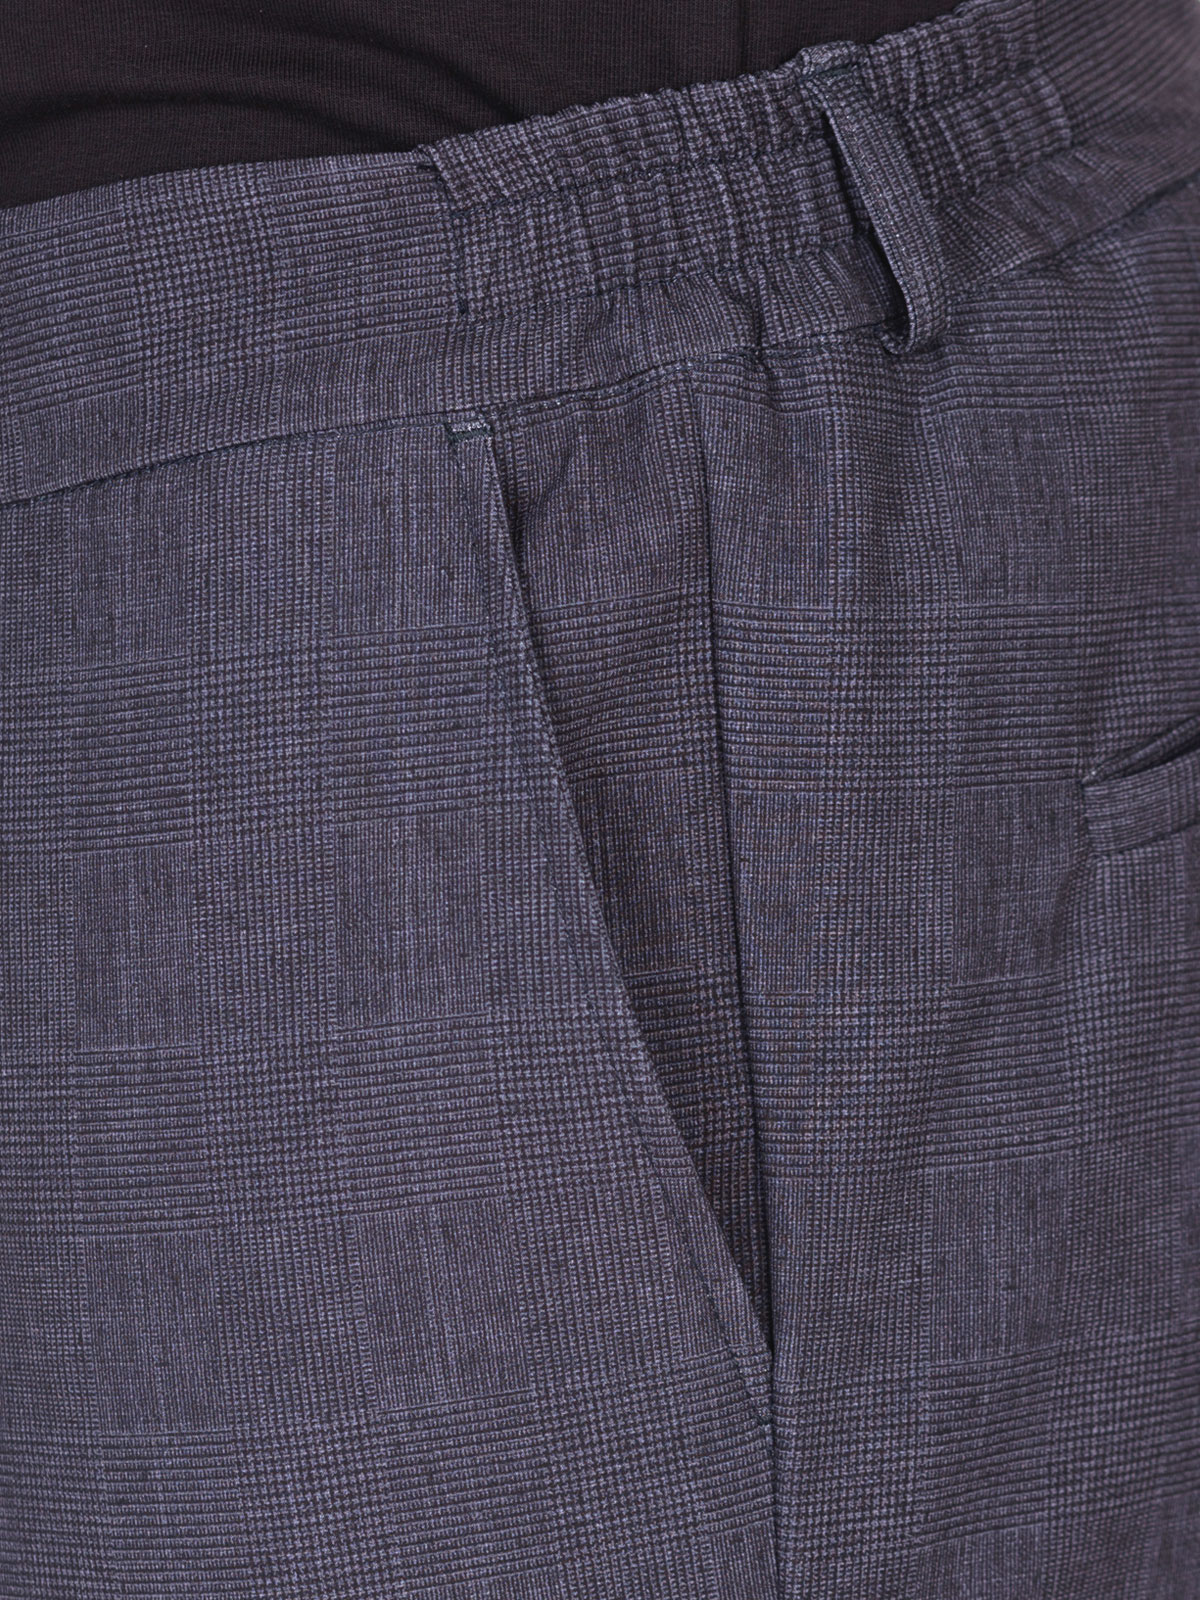 Ανδρικό παντελόνι σε σκούρο γκρι - 29007 € 55.12 img3